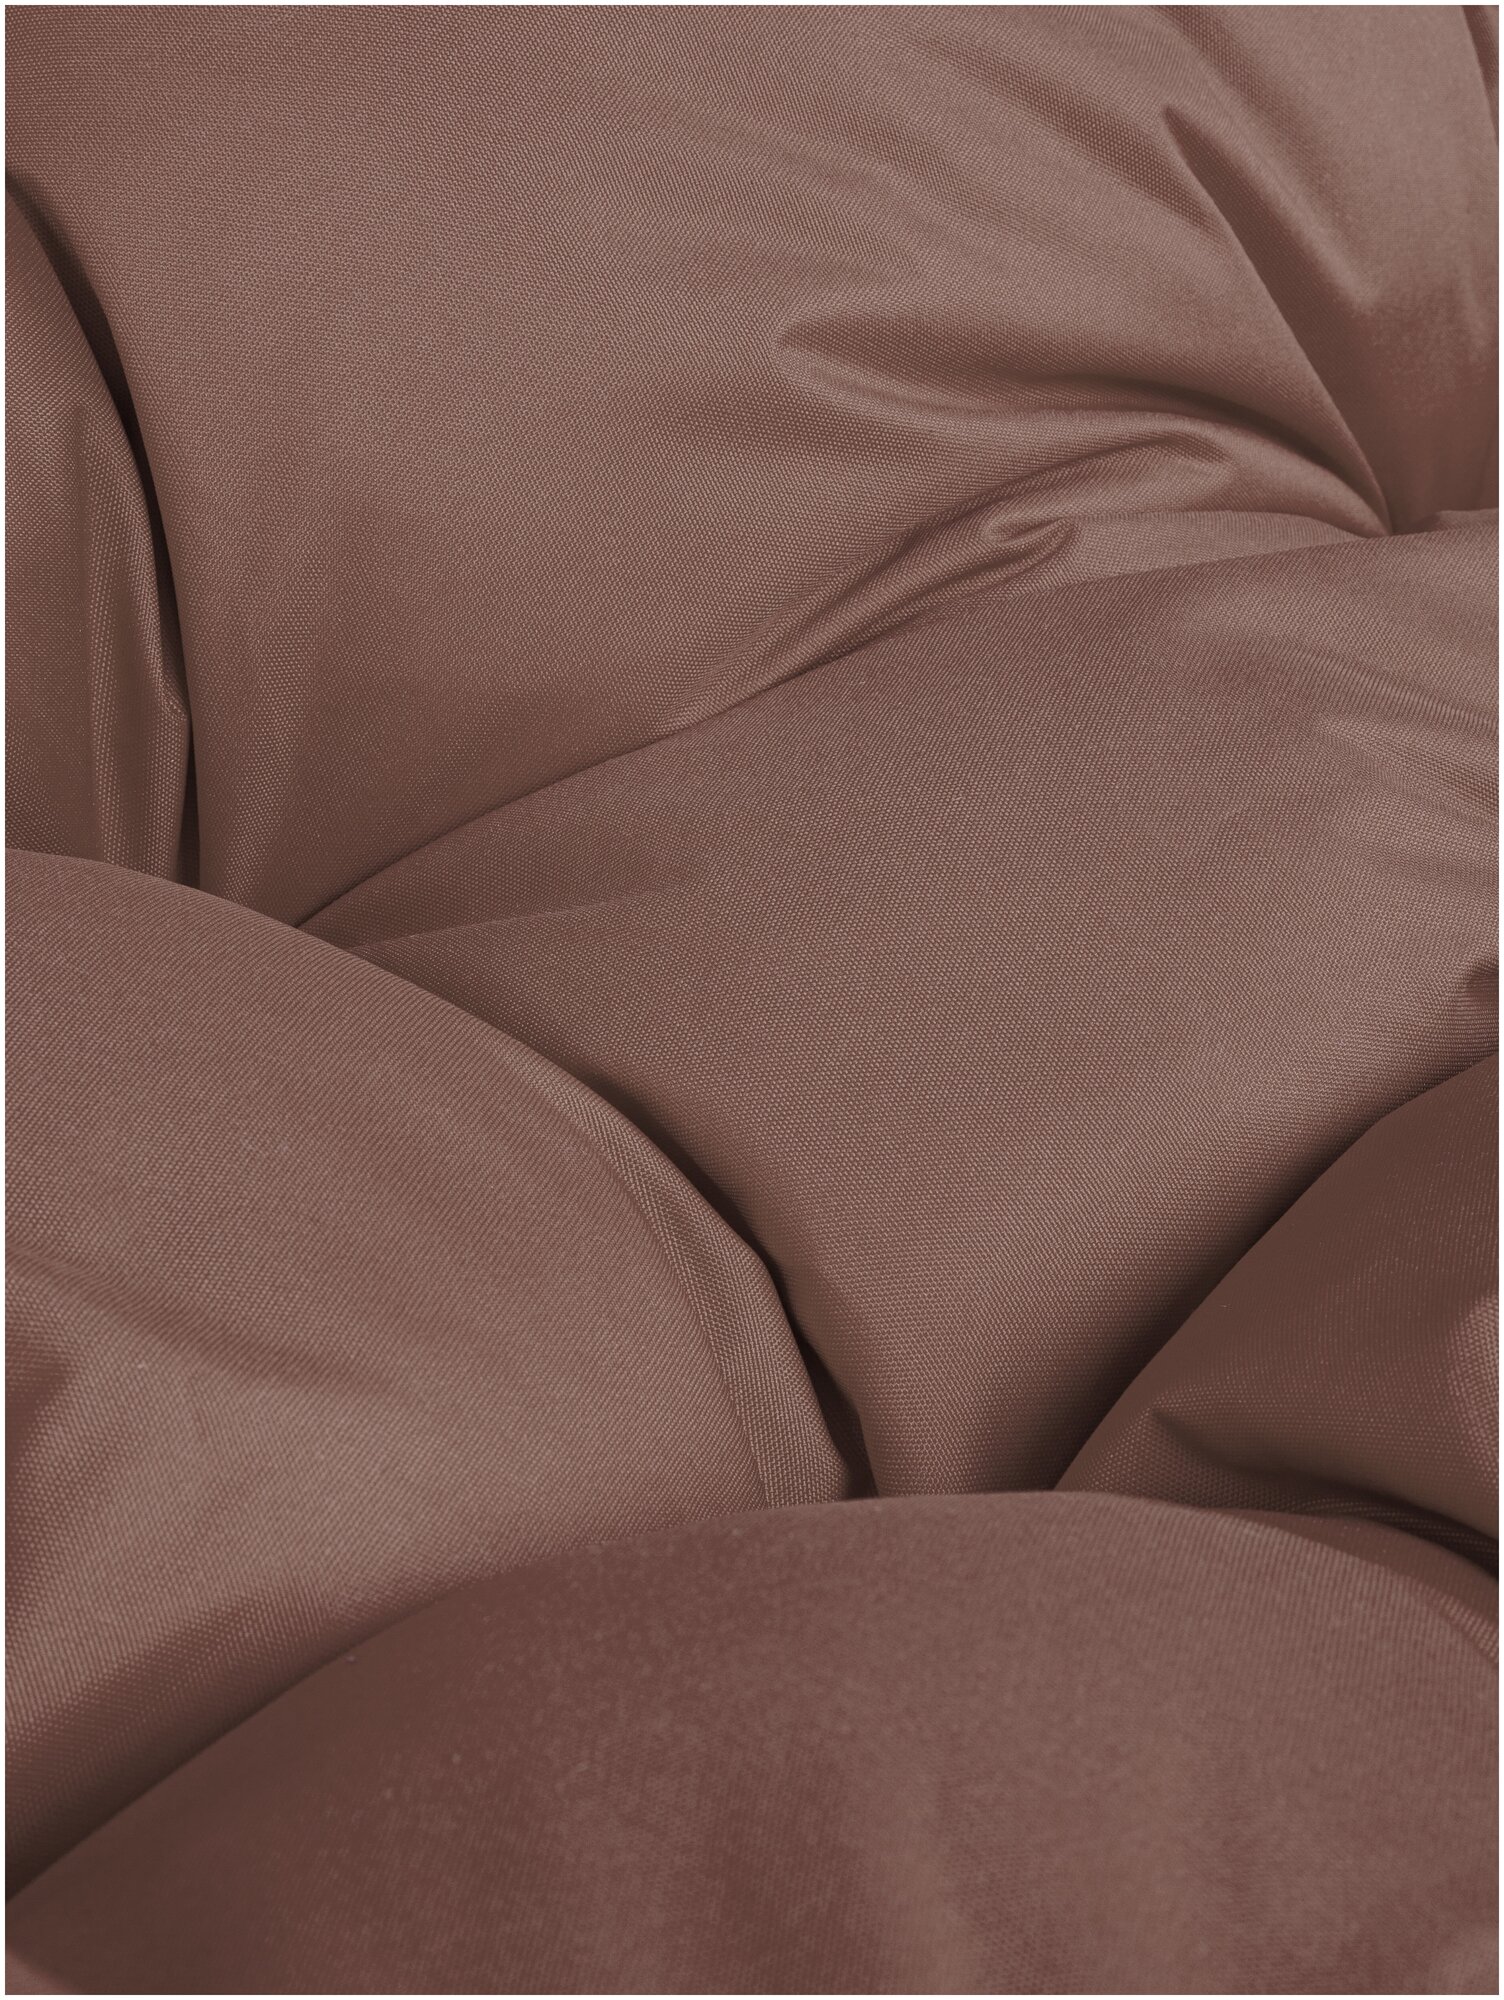 Диван M-Group лежебока на подставке ротанг серый, коричневая подушка - фотография № 6